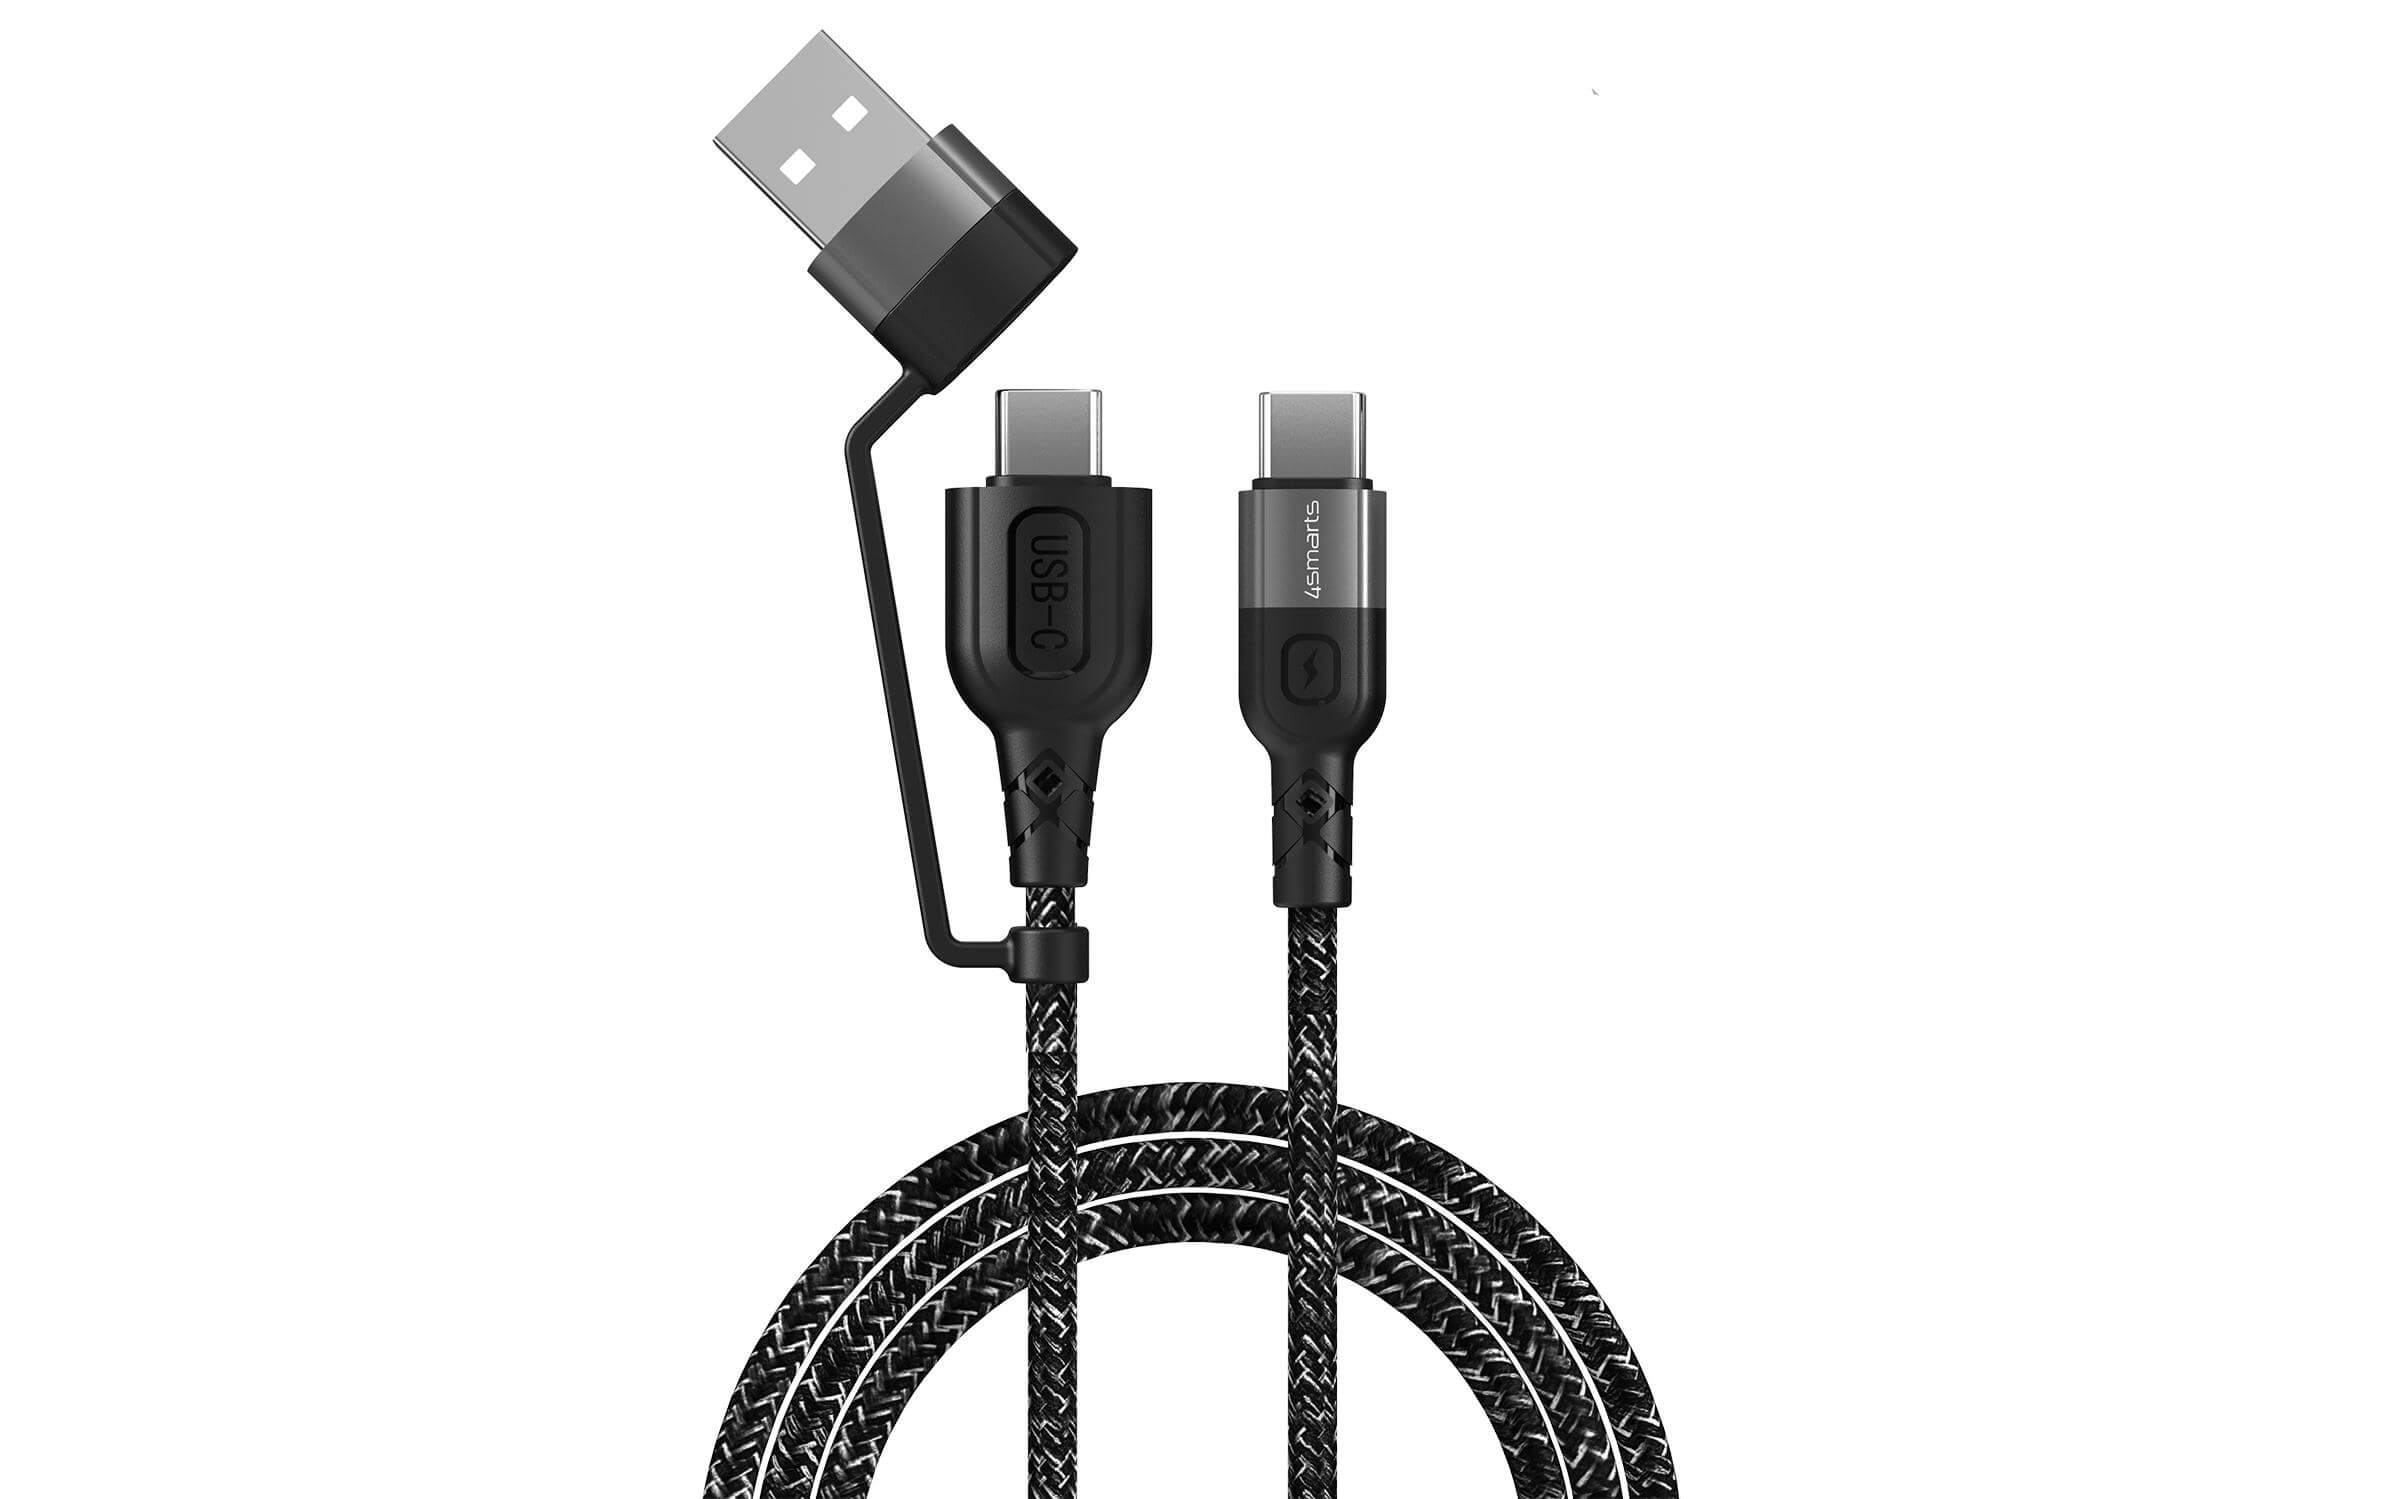 Câble chargeur USB USB A/USB C - USB C 1.5 m - Câbles ⋅ Adaptateurs